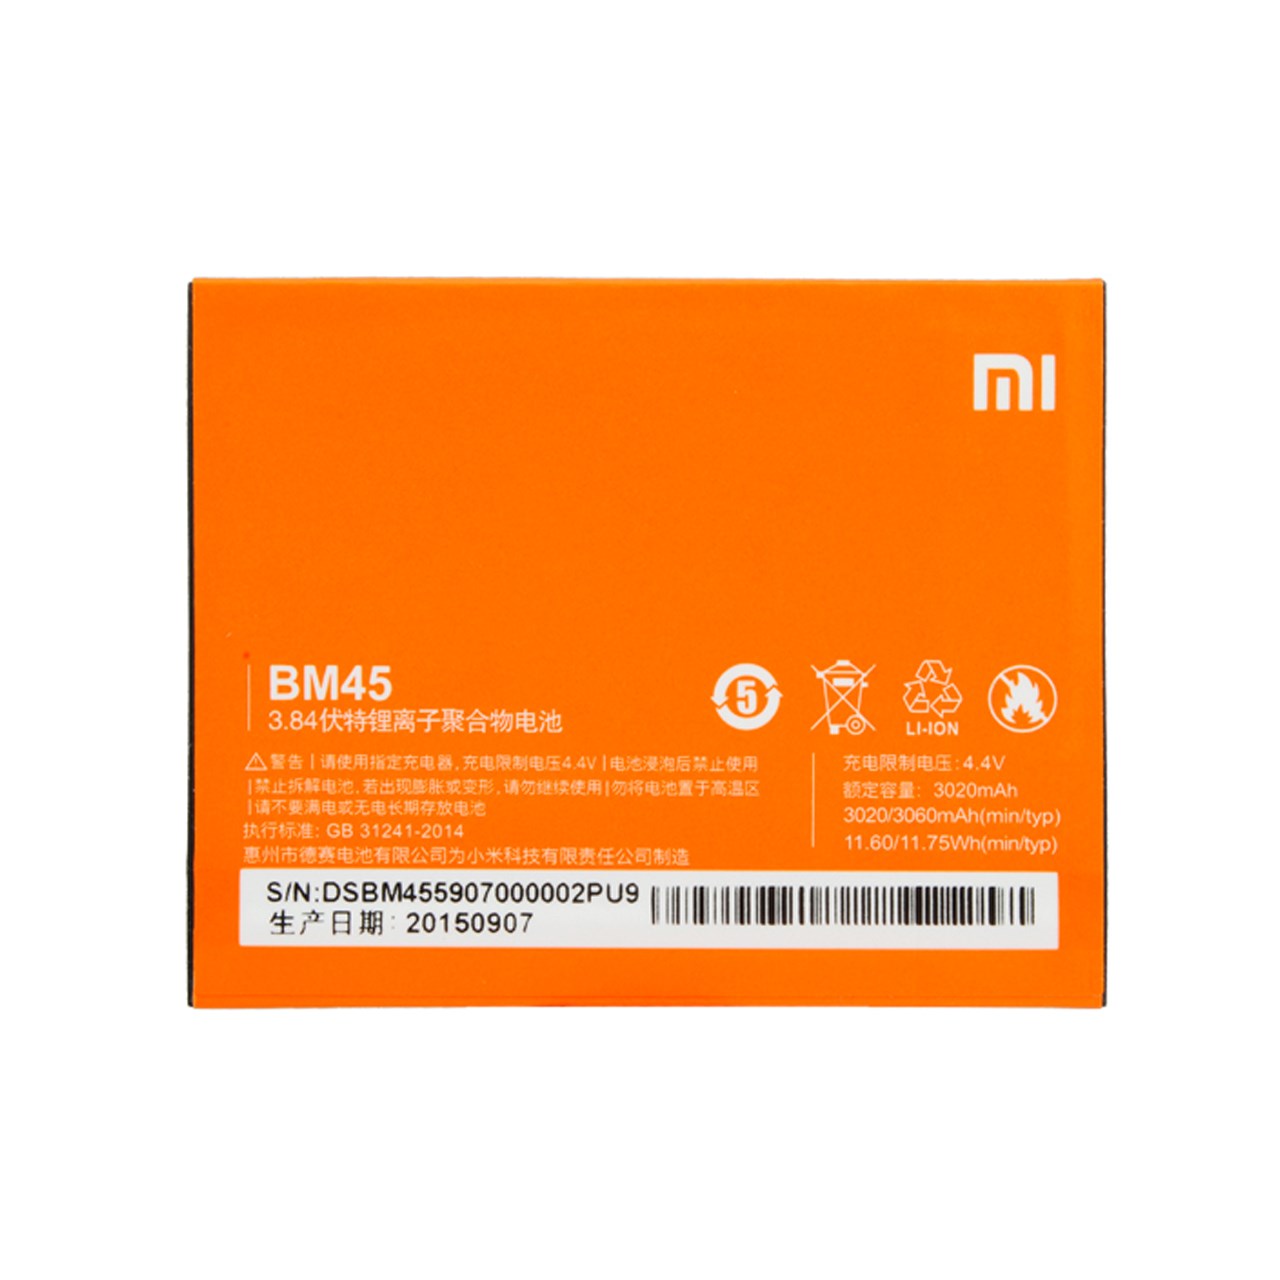 باتری موبایل مدل BM45 مناسب برای گوشی Redmi Note 2